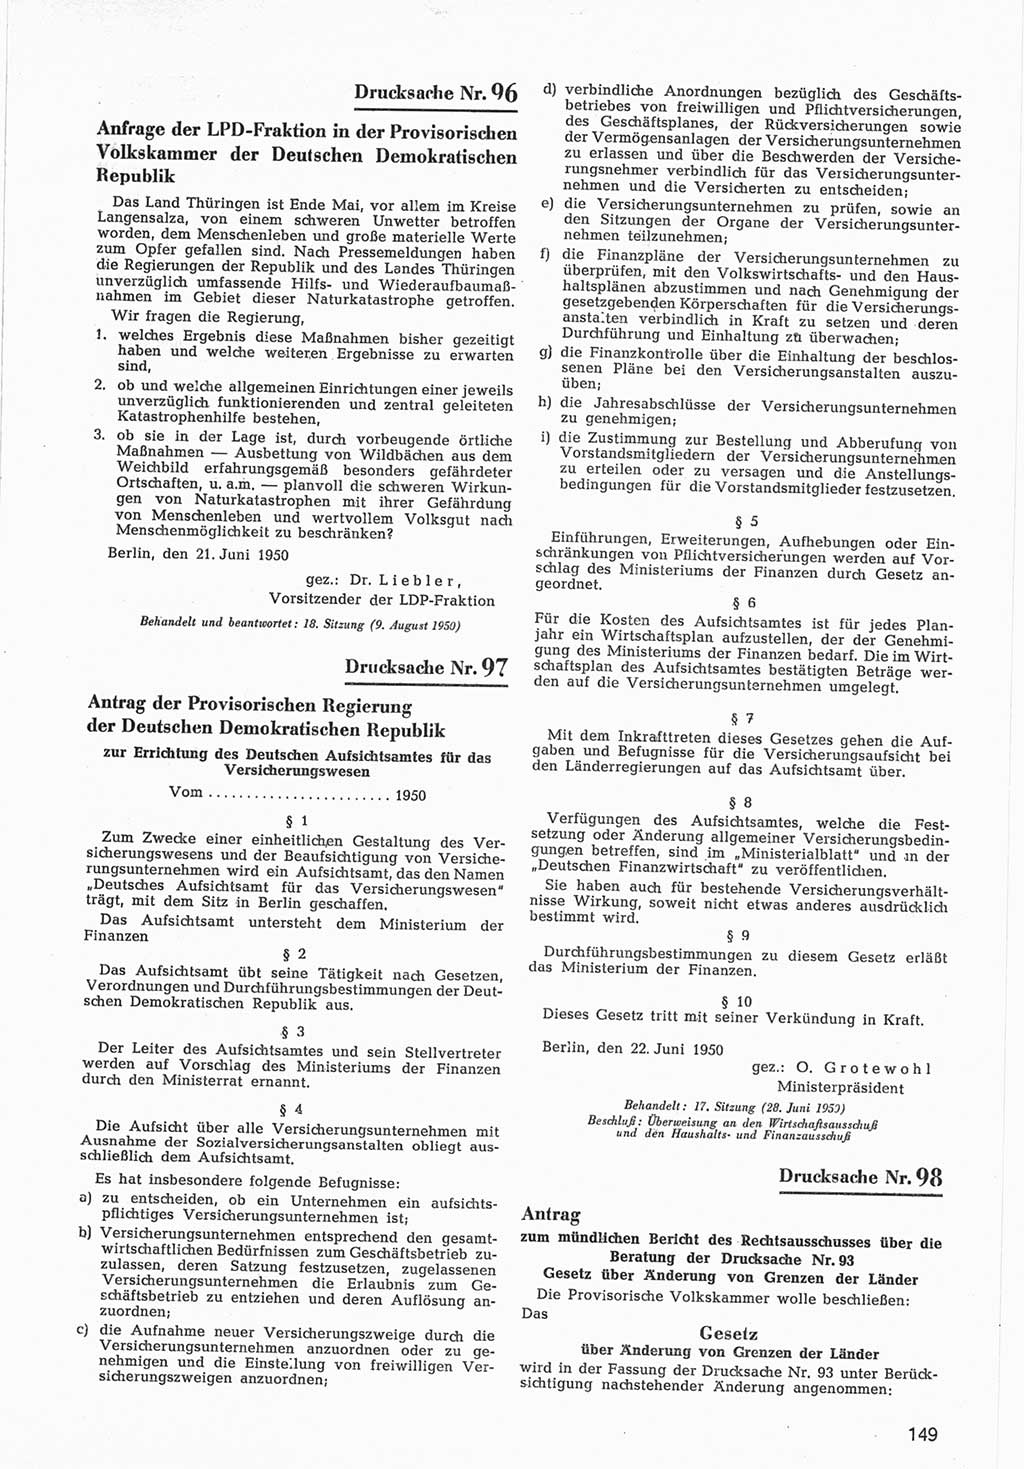 Provisorische Volkskammer (VK) der Deutschen Demokratischen Republik (DDR) 1949-1950, Dokument 751 (Prov. VK DDR 1949-1950, Dok. 751)